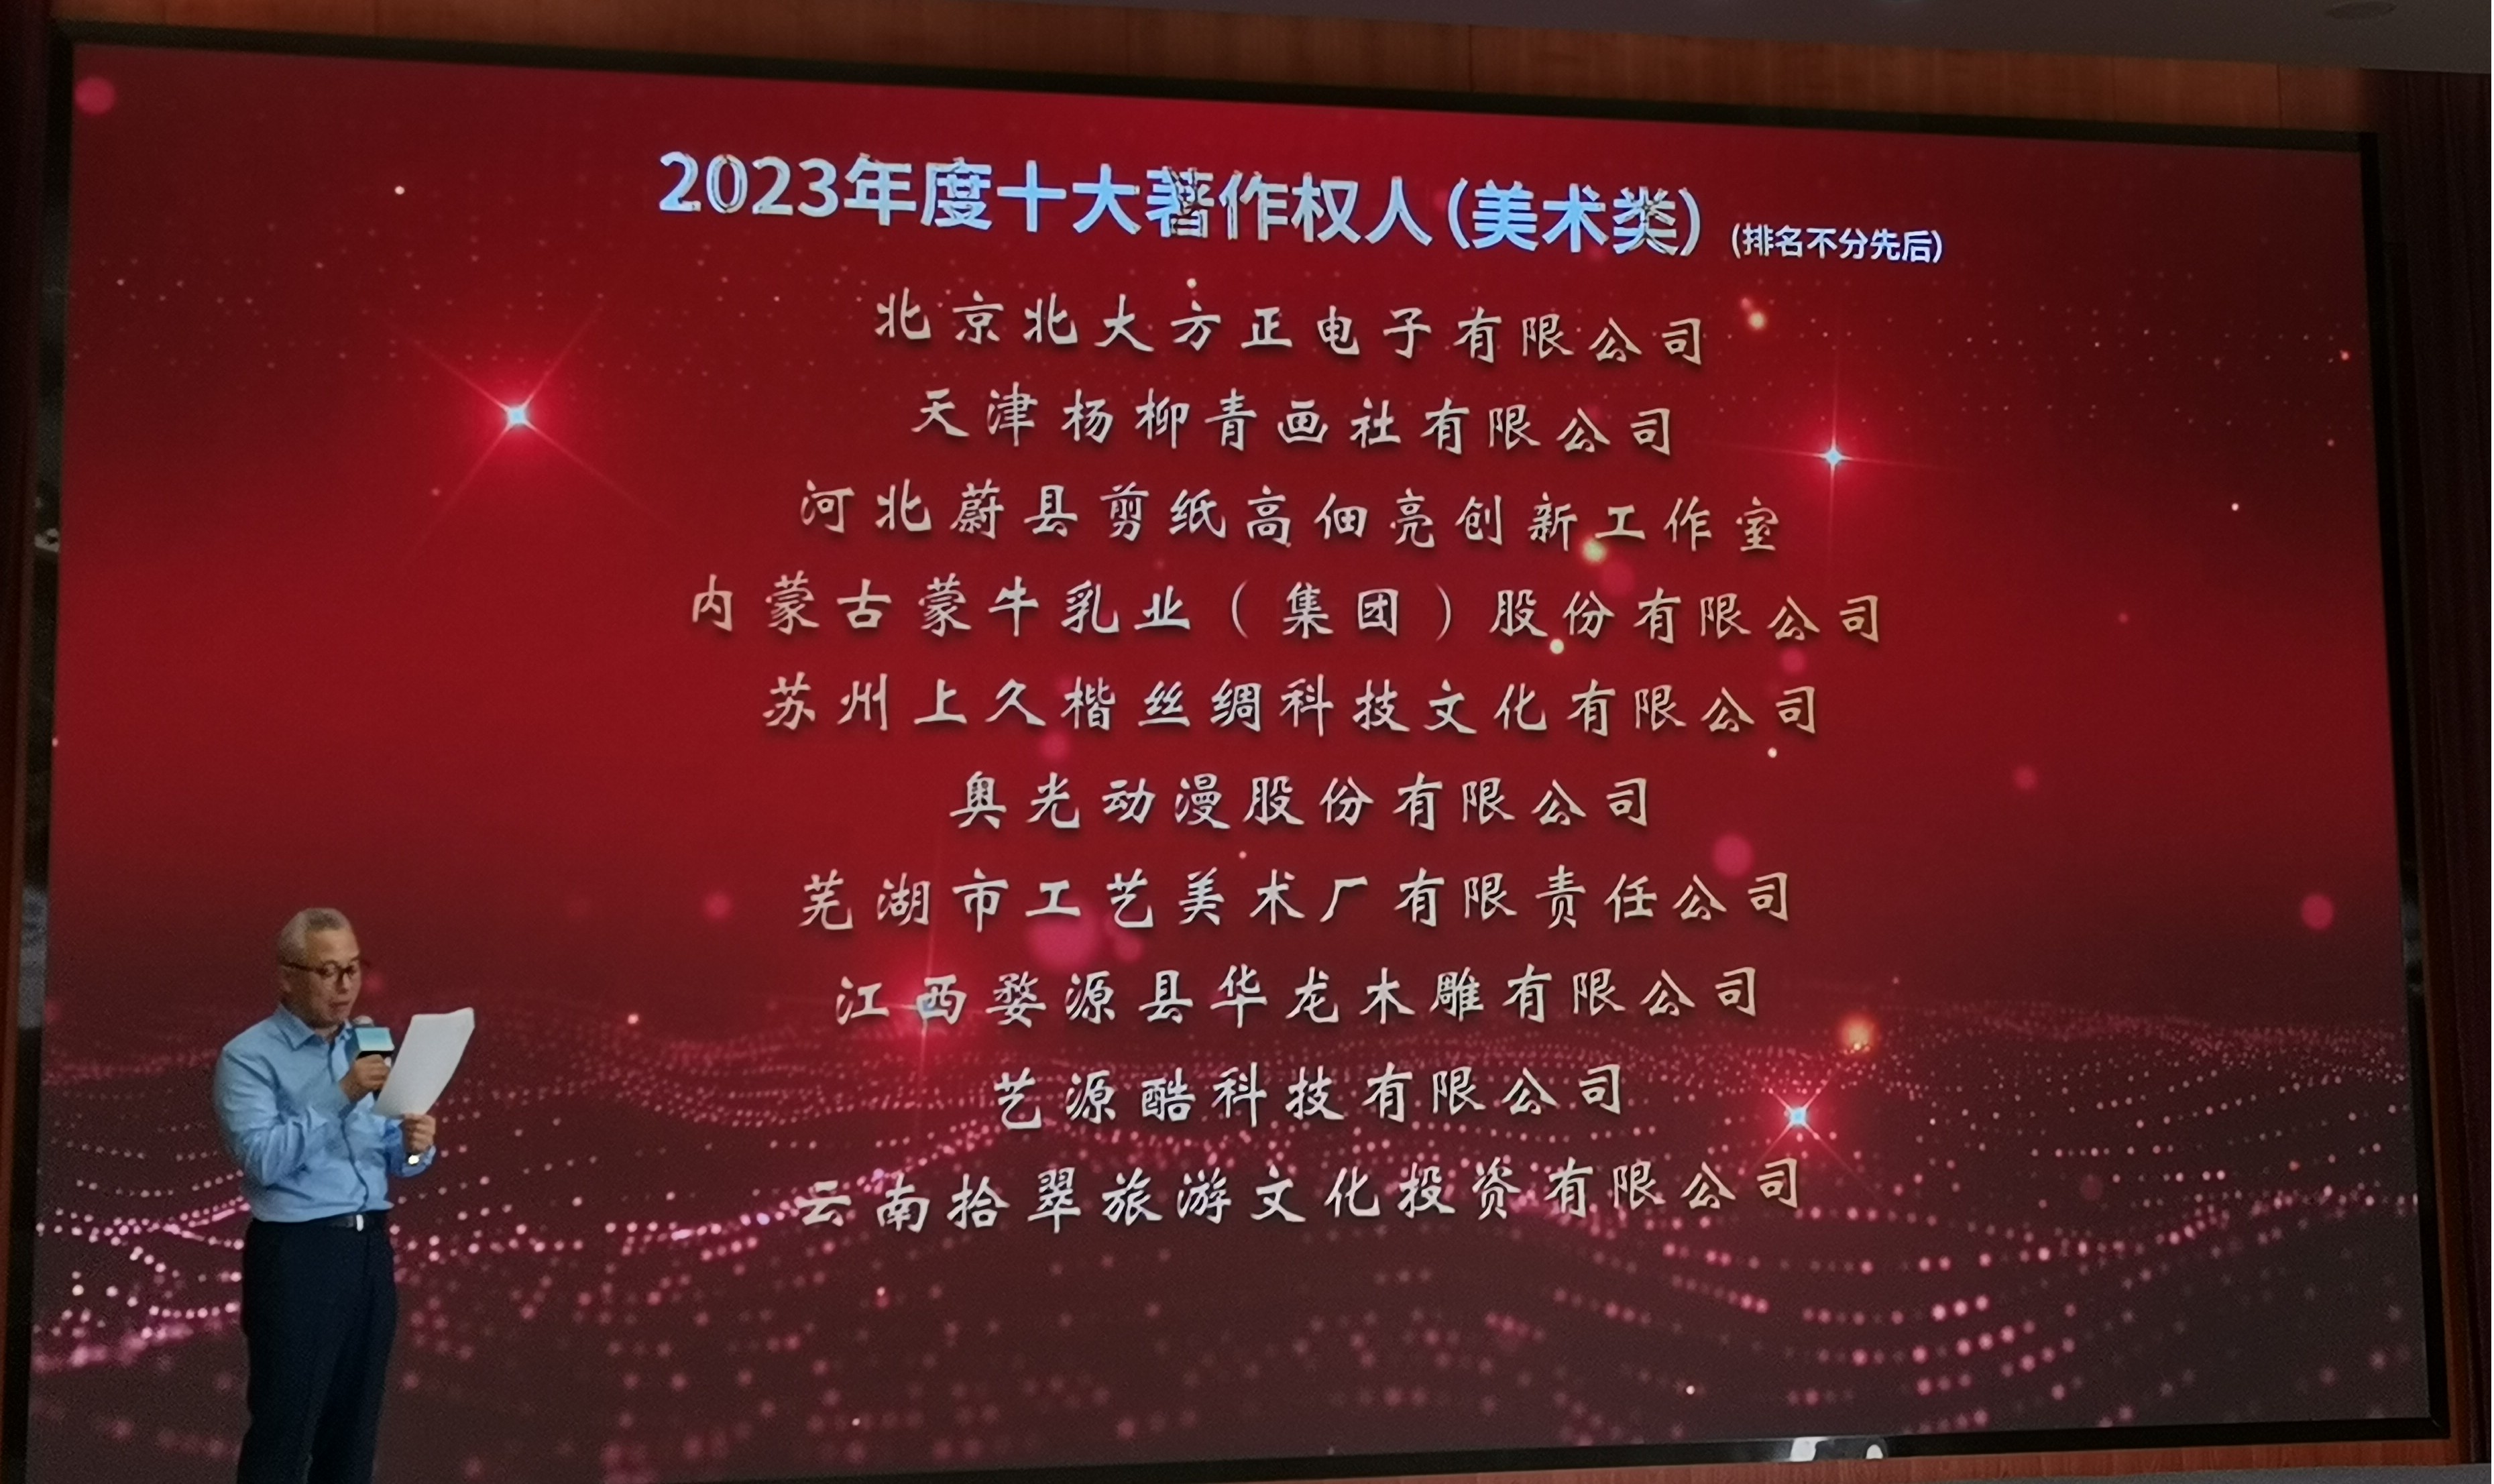 芜湖市工艺美术厂有限责任公司荣获 “2023年度十大著作权人”称号